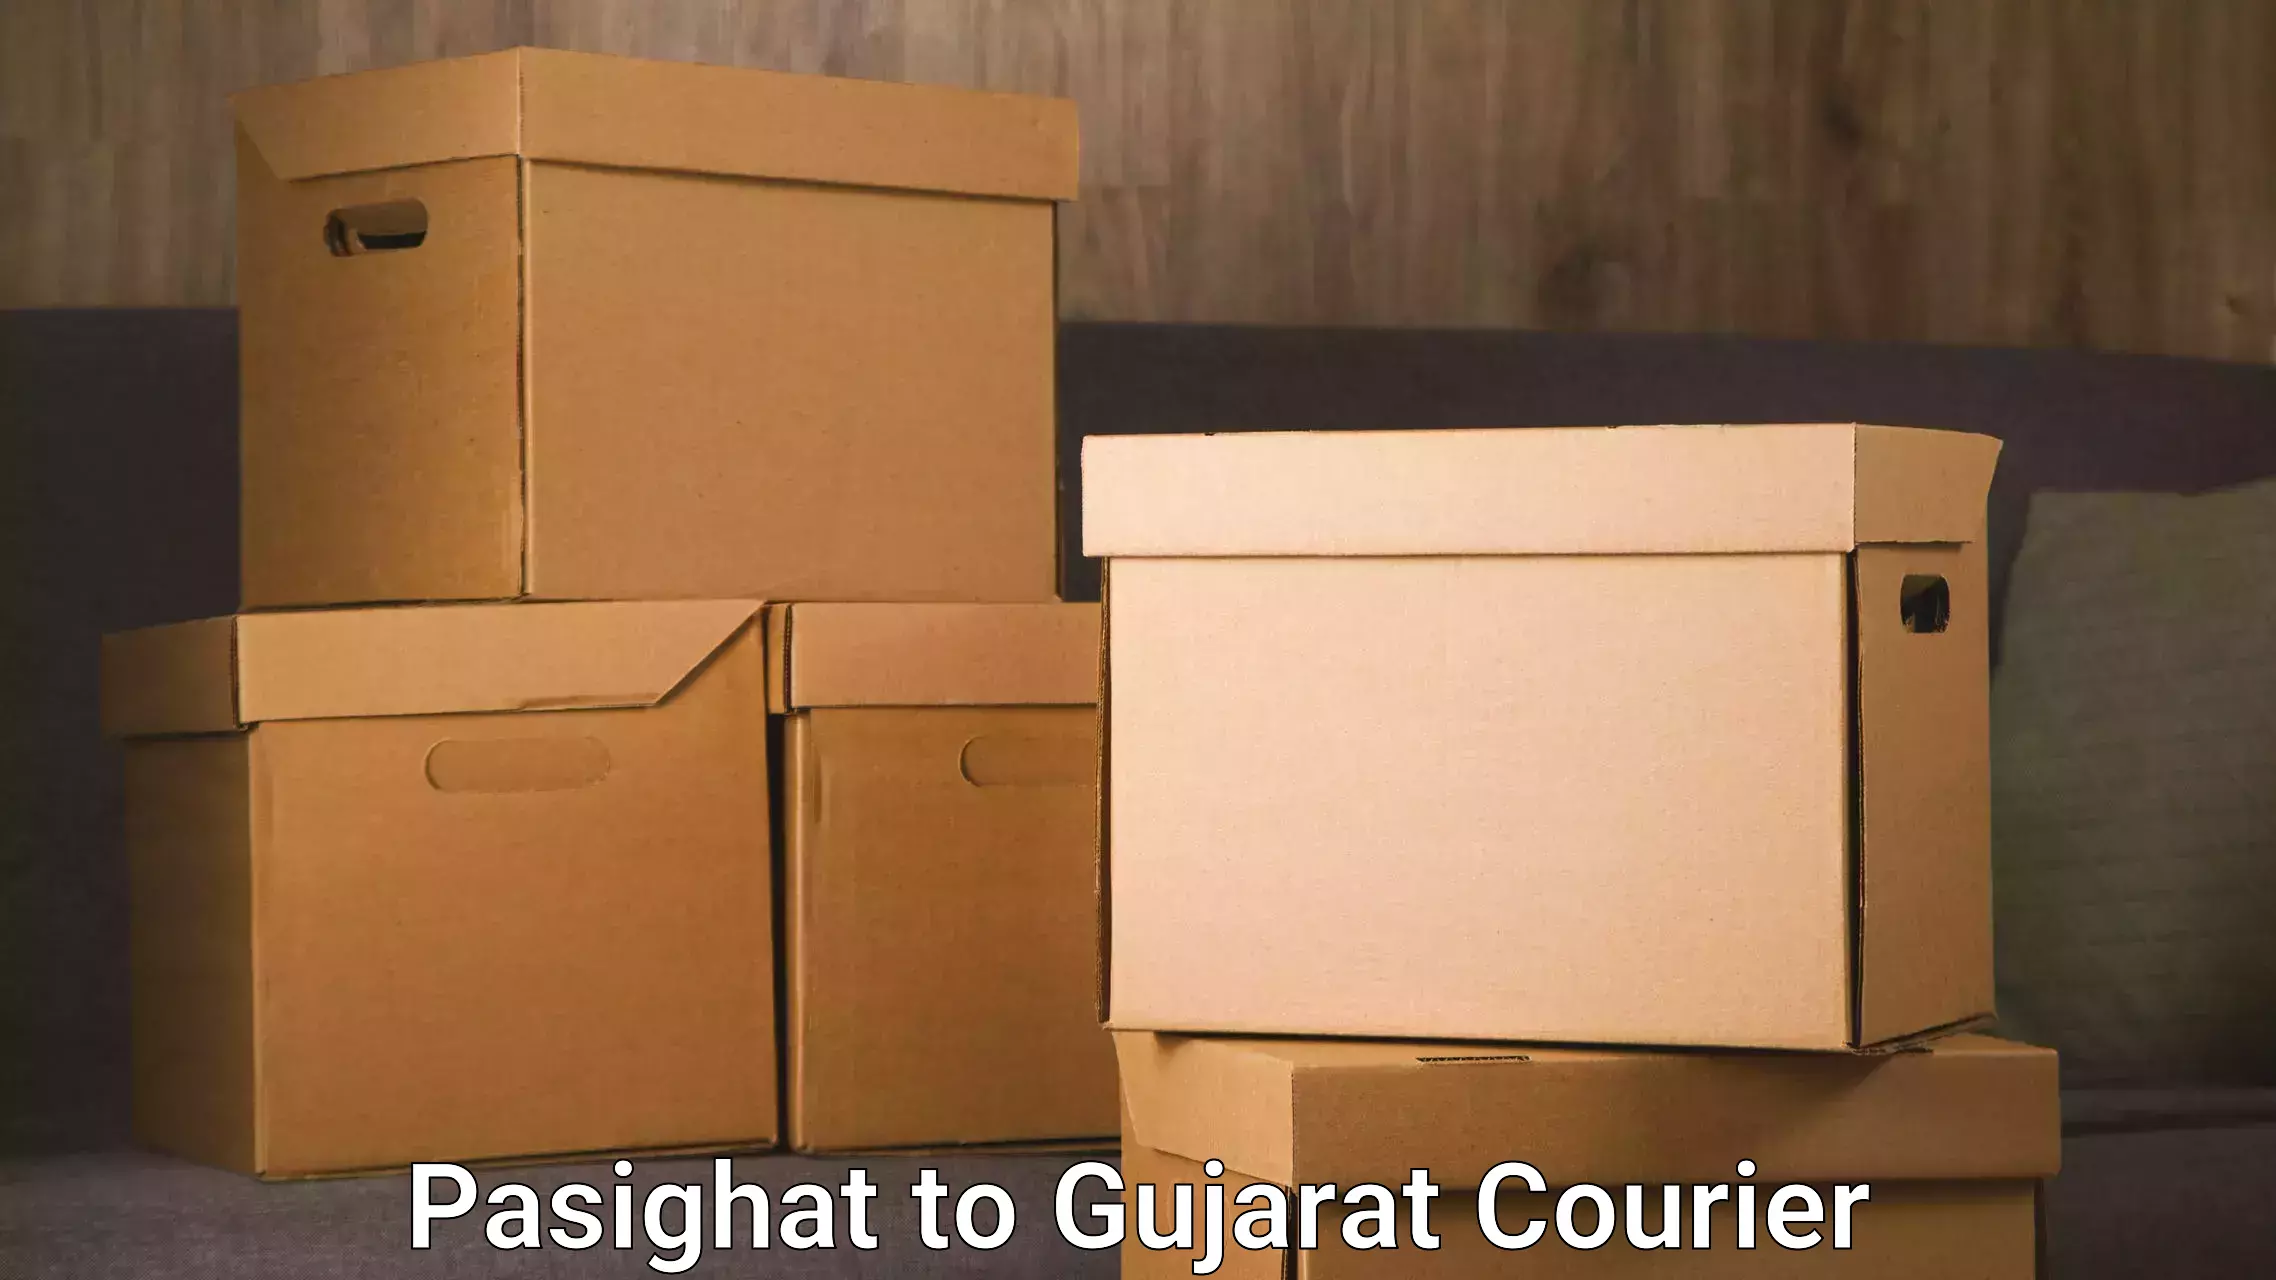 Express logistics service Pasighat to Gujarat